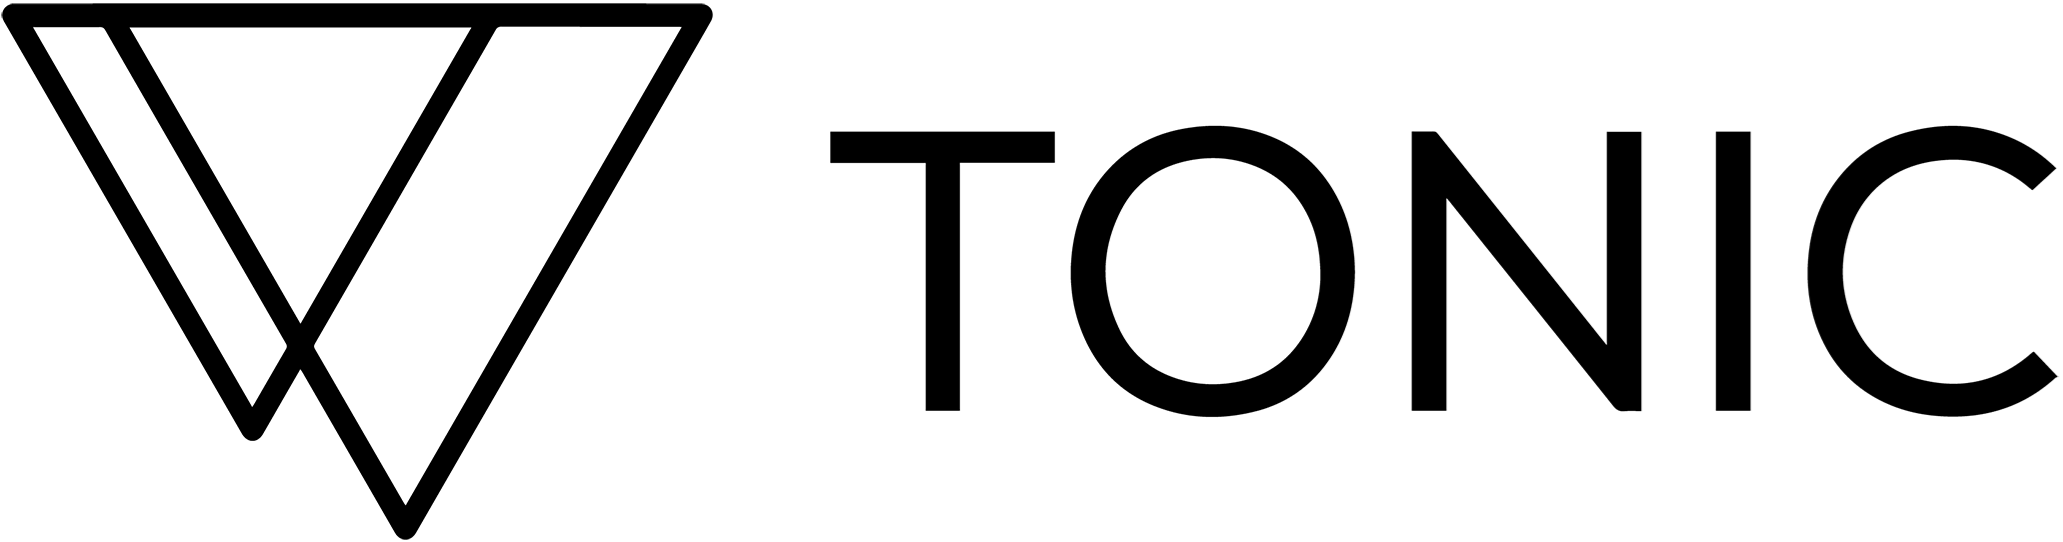 TONIC (NY) Cannabis Brand Logo